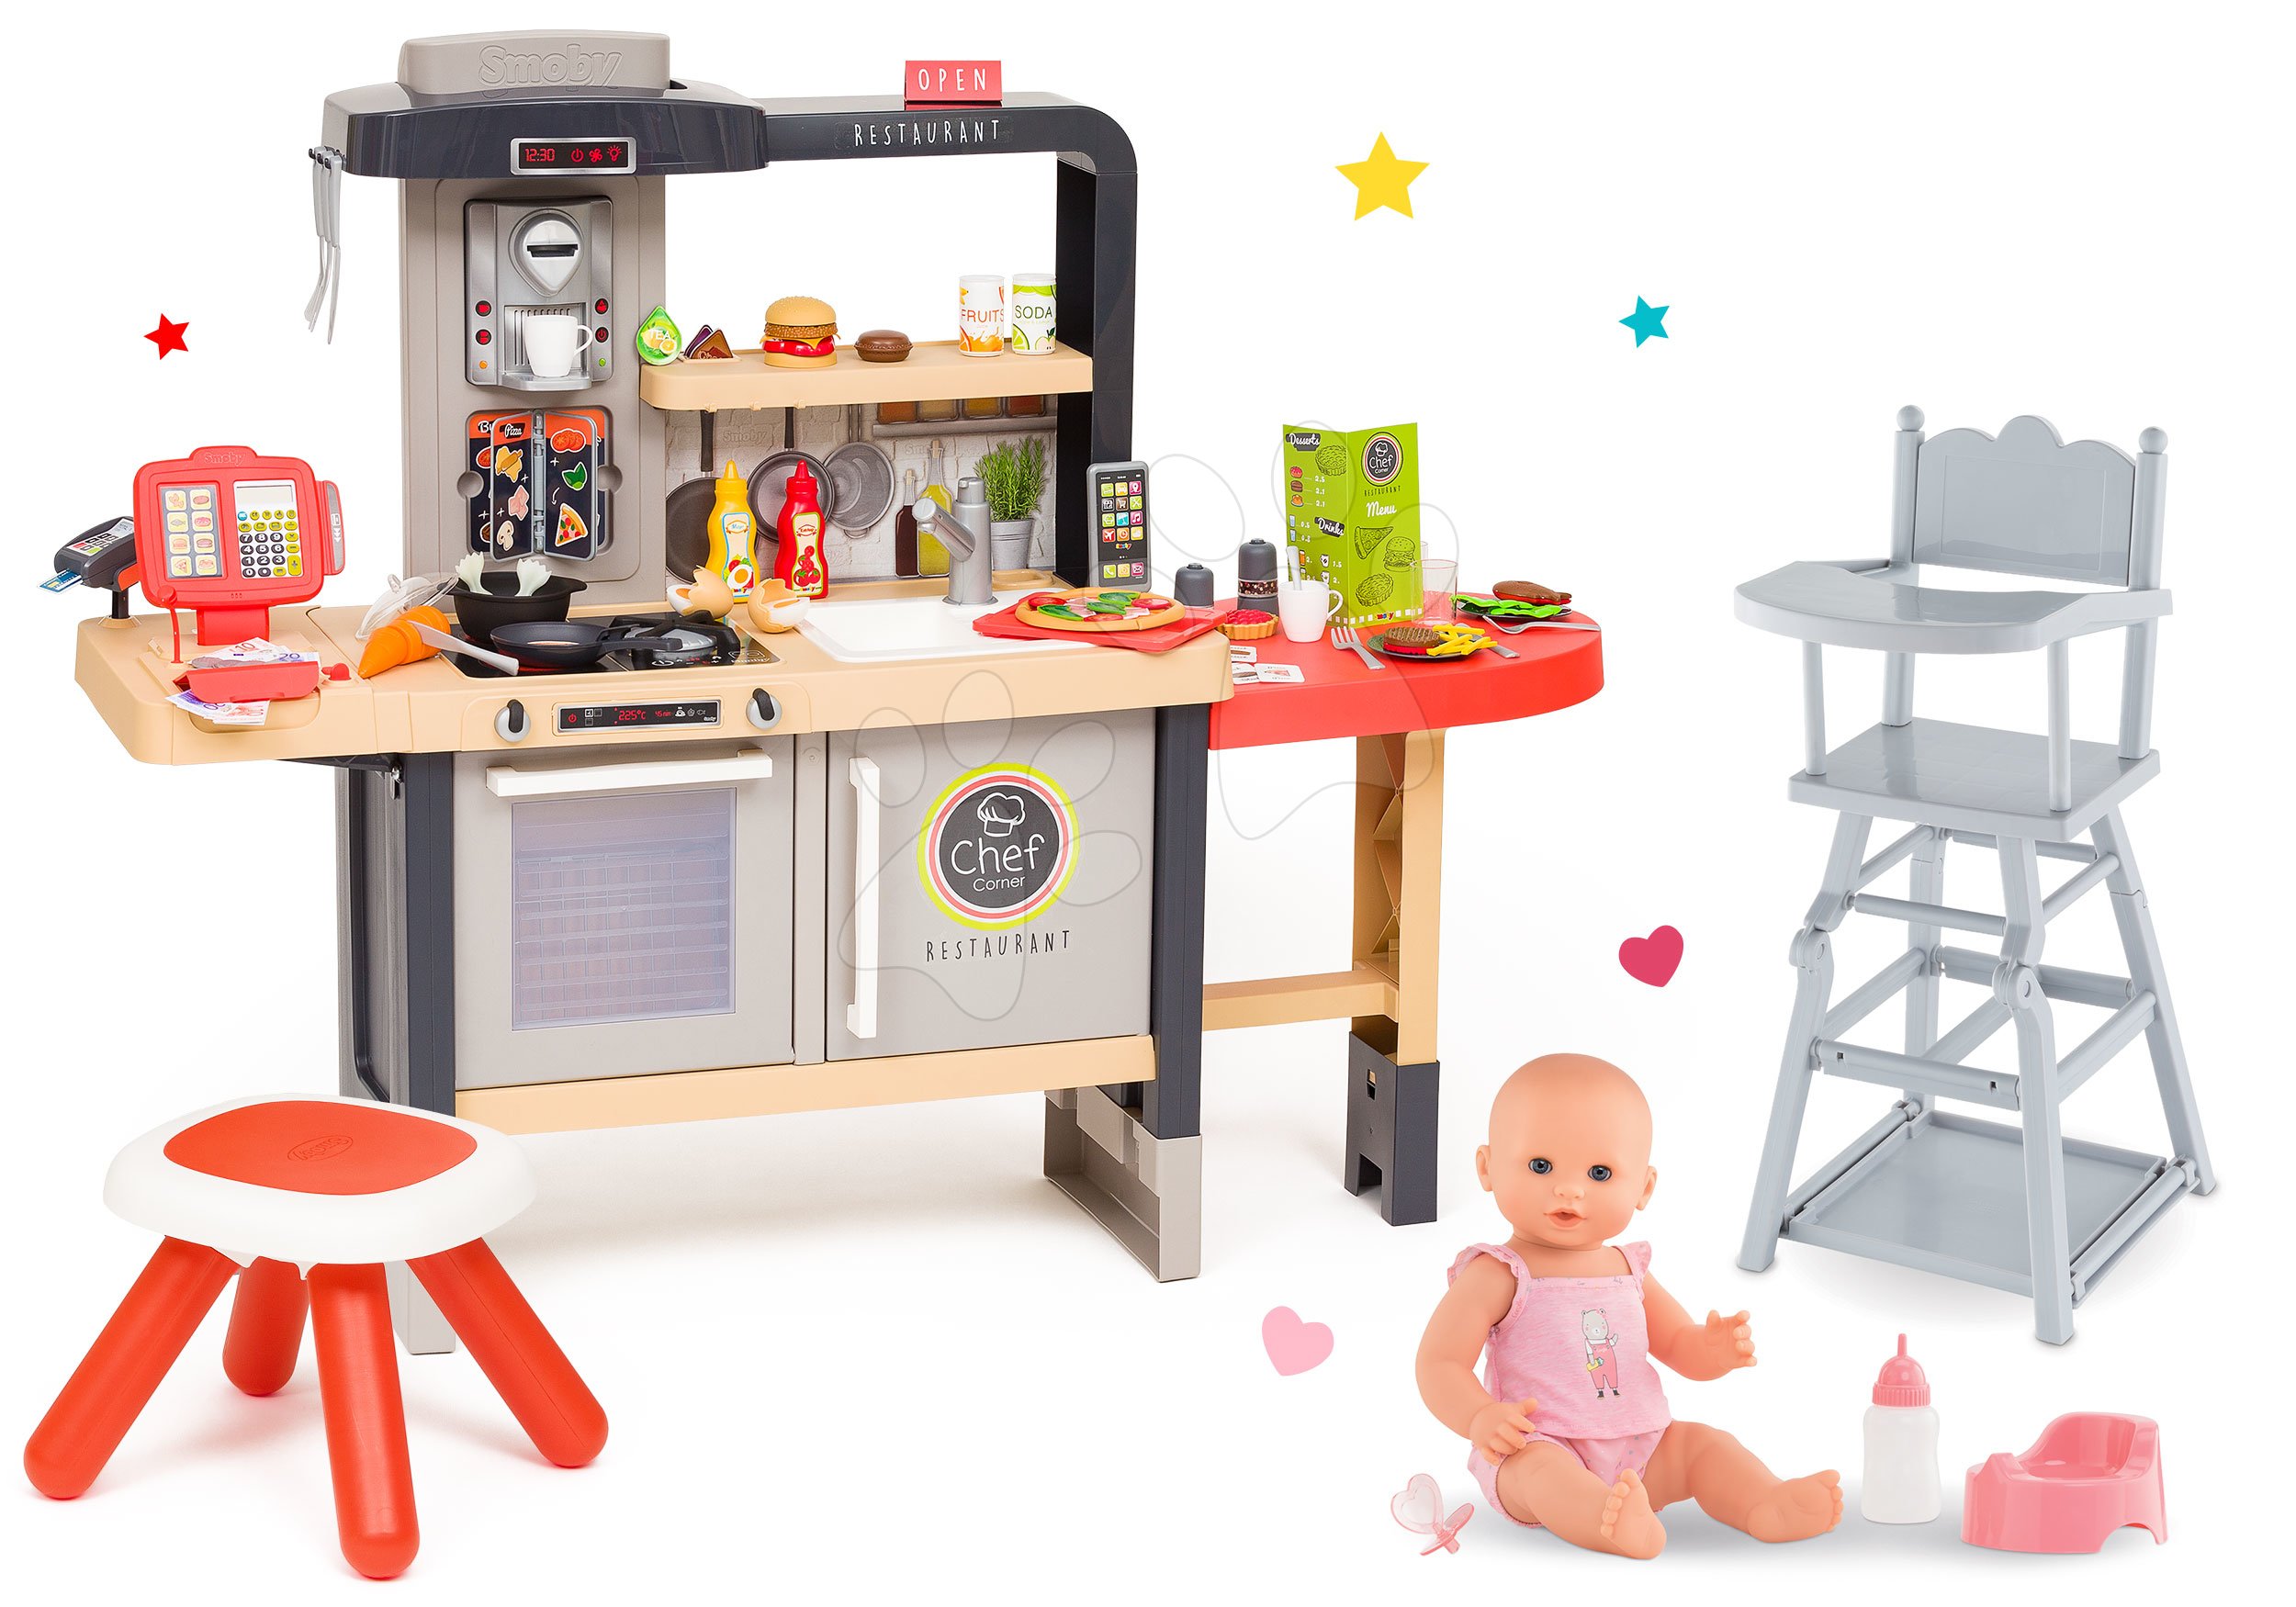 Kuchyňky pro děti sety - Set restaurace s elektronickou kuchyňkou Chef Corner Restaurant Smoby s jídelní židličkou a čurající panenkou